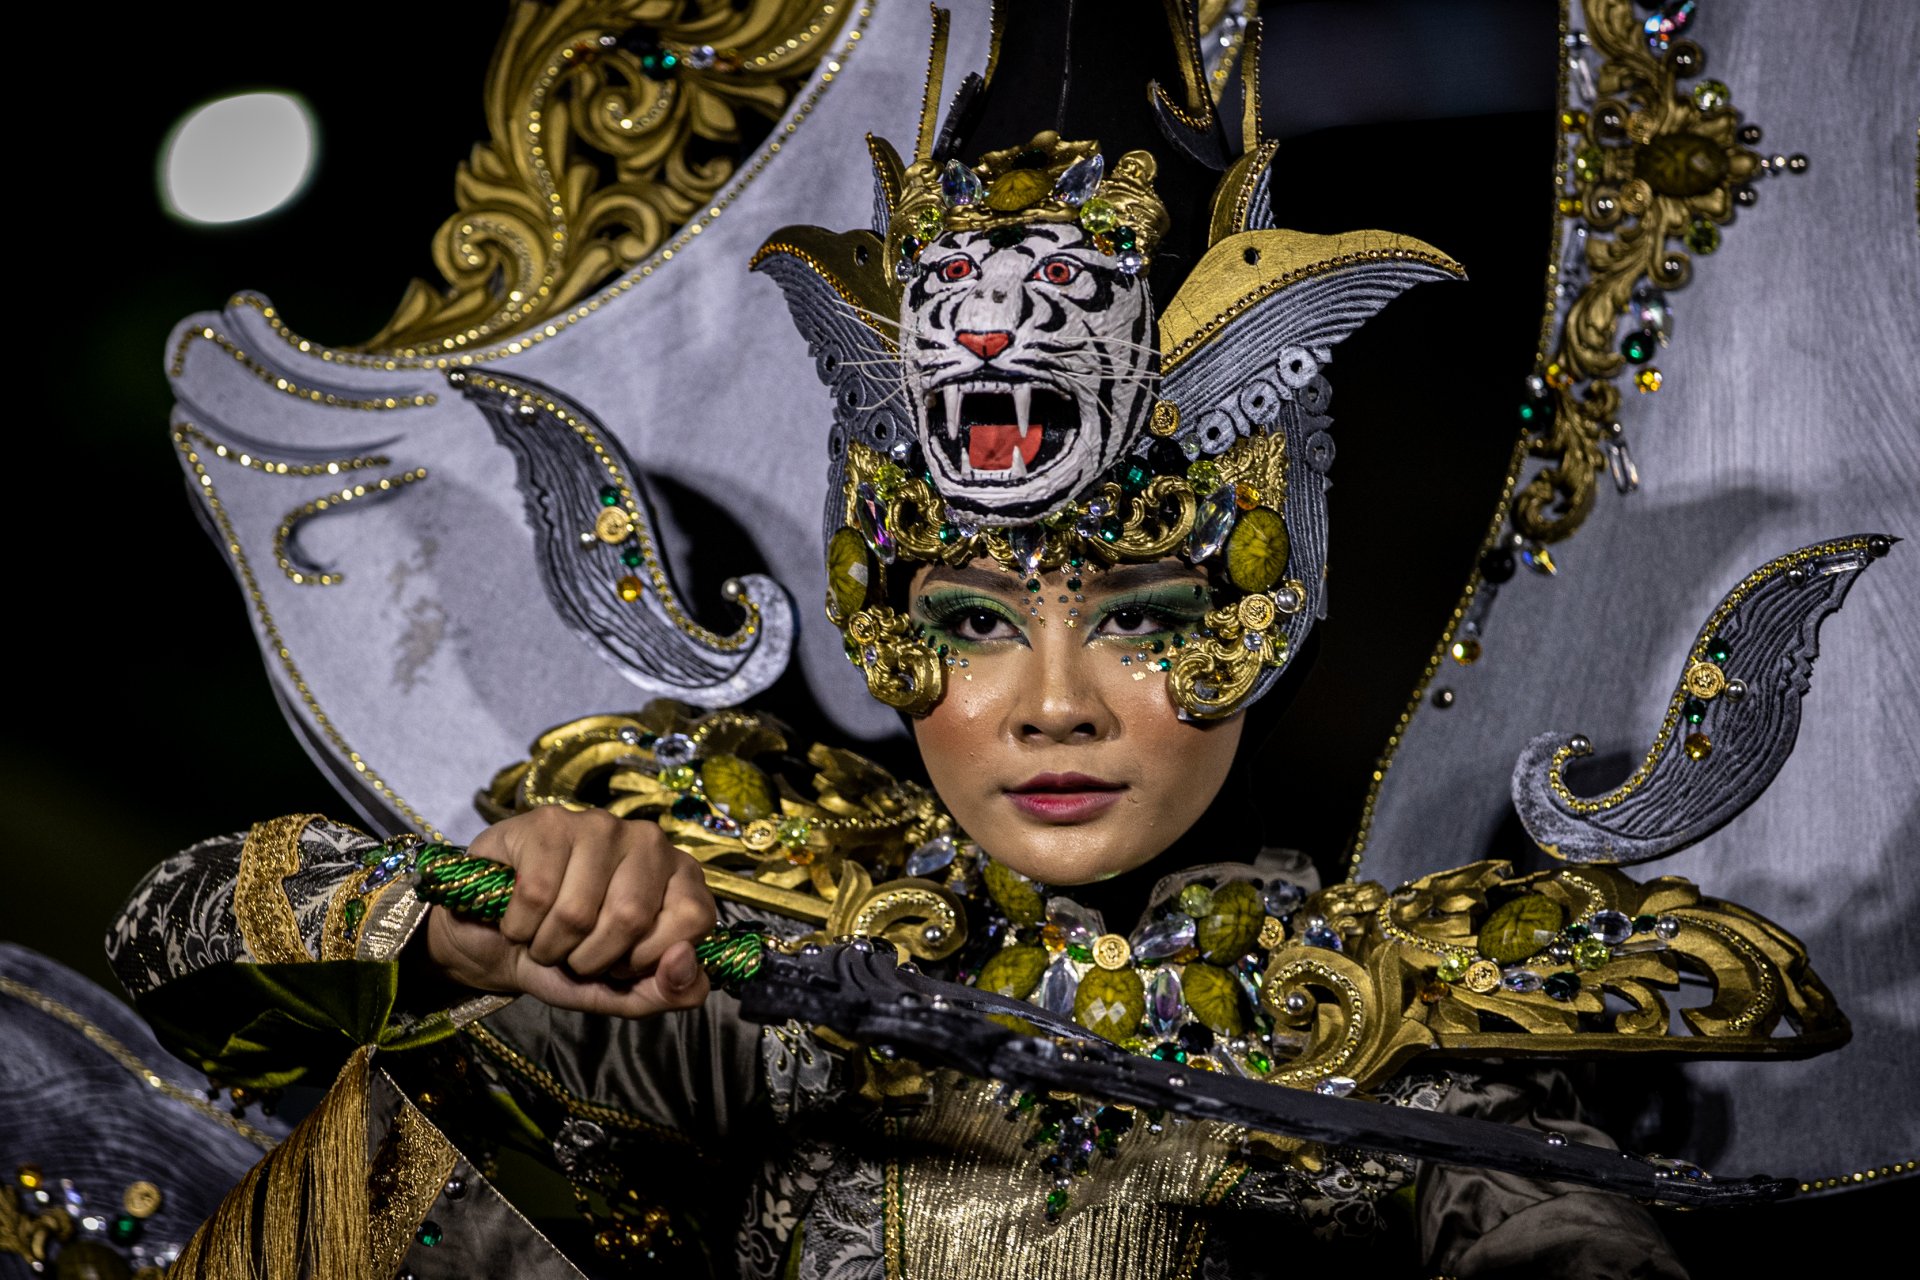 Карнавалът е изцяло в бразилски стил с акцент върху традиционните индонезийски мотиви. Уличният карнавал претендира да бъде един от най-големите в света и се състои от повече от хиляда изпълнители, а моделите дефилират по 3,6 км дълъг път - подиум. 